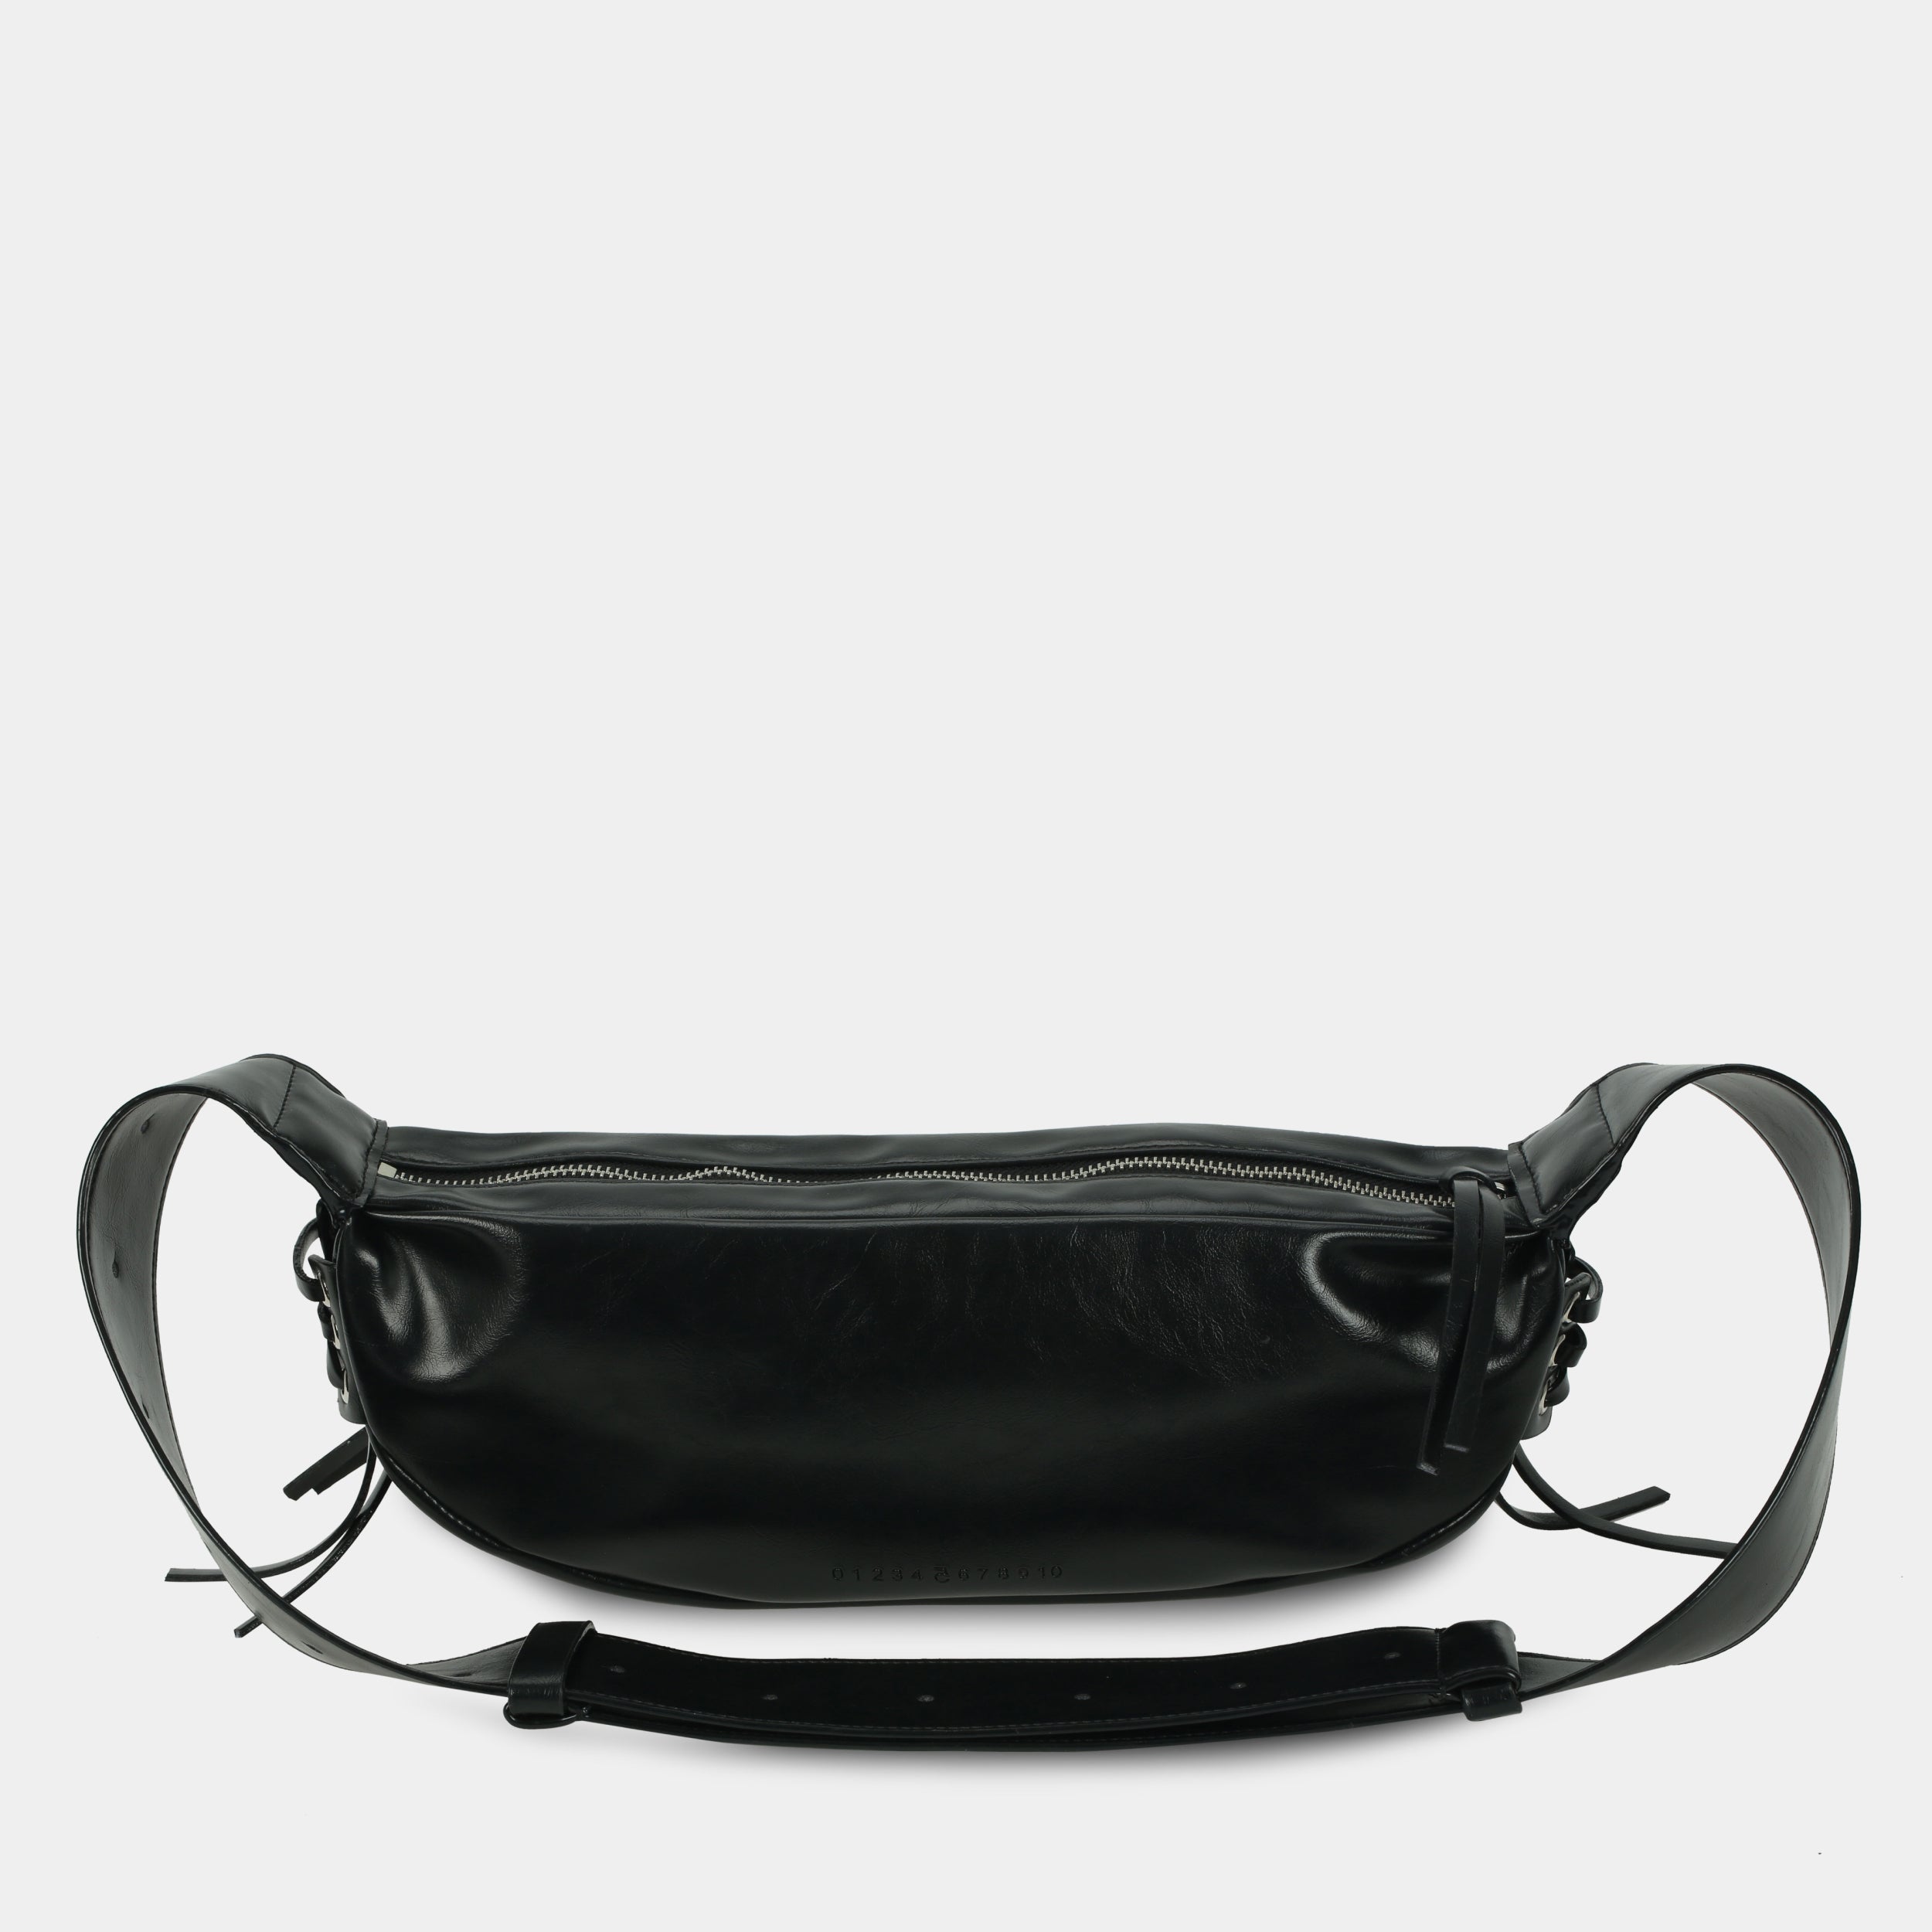 Túi xách LACE size lớn (M) màu đen